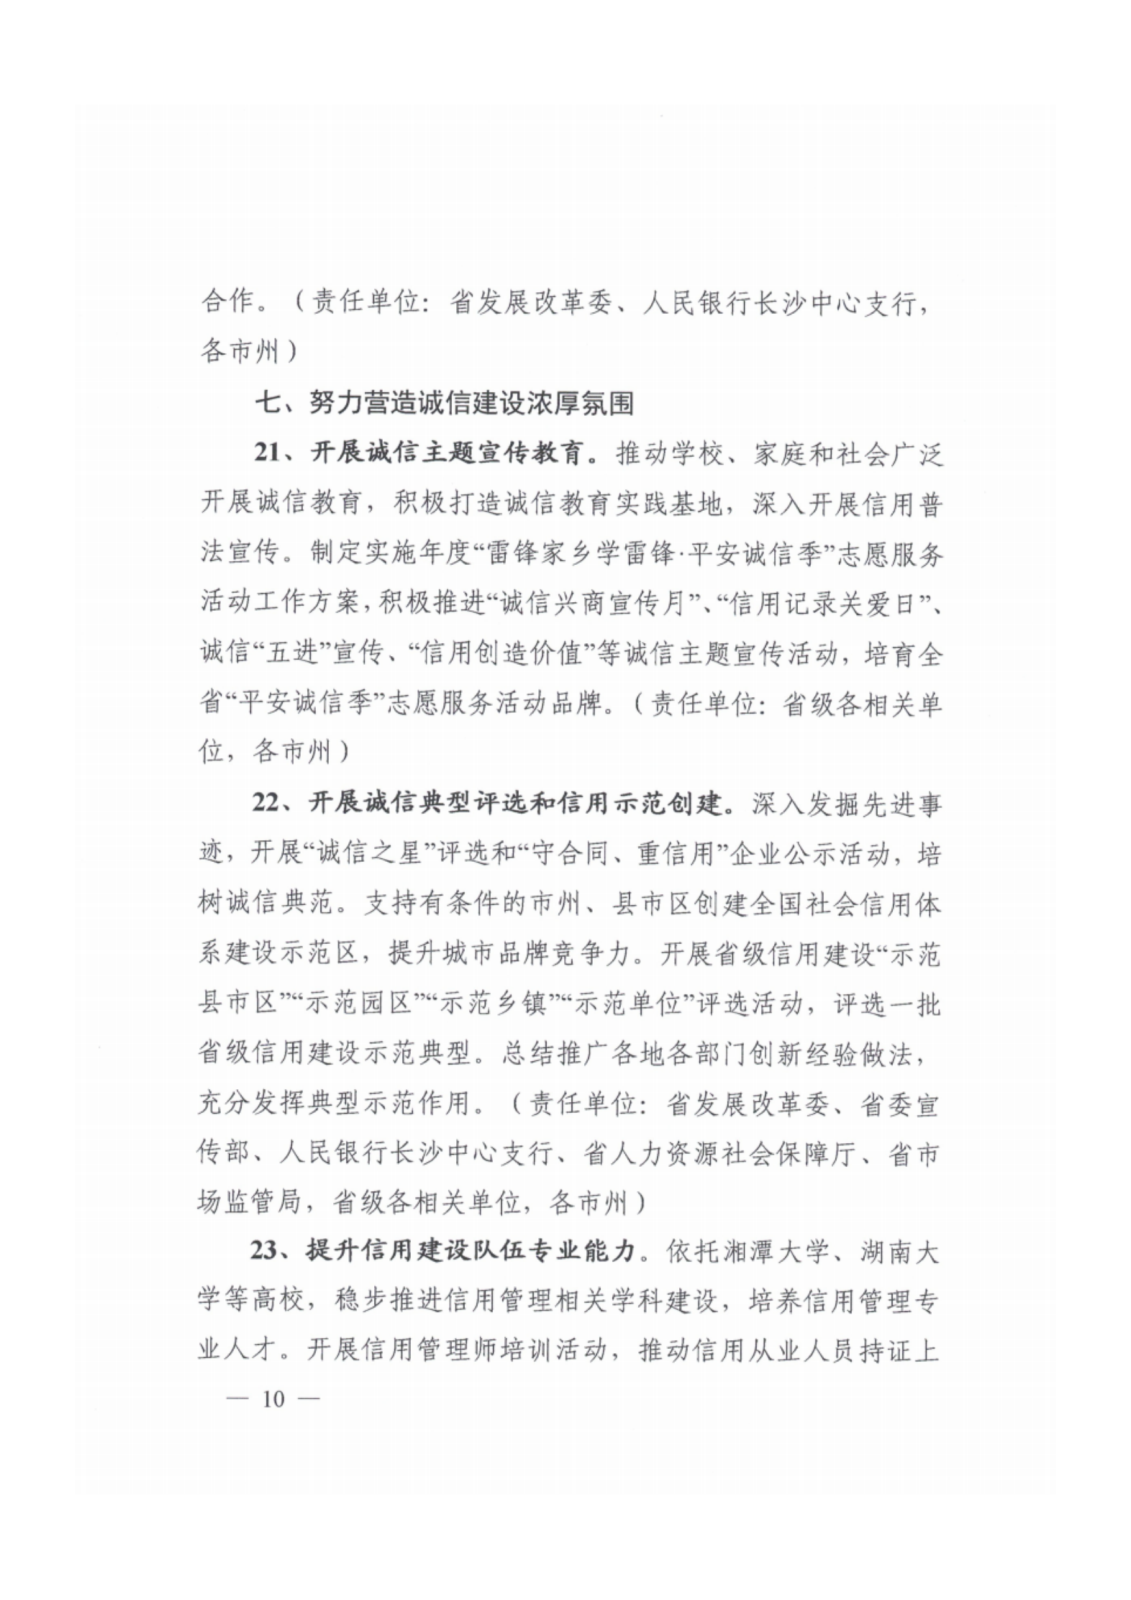 2023年湖南省社会信用体系建设工作要点_09.png